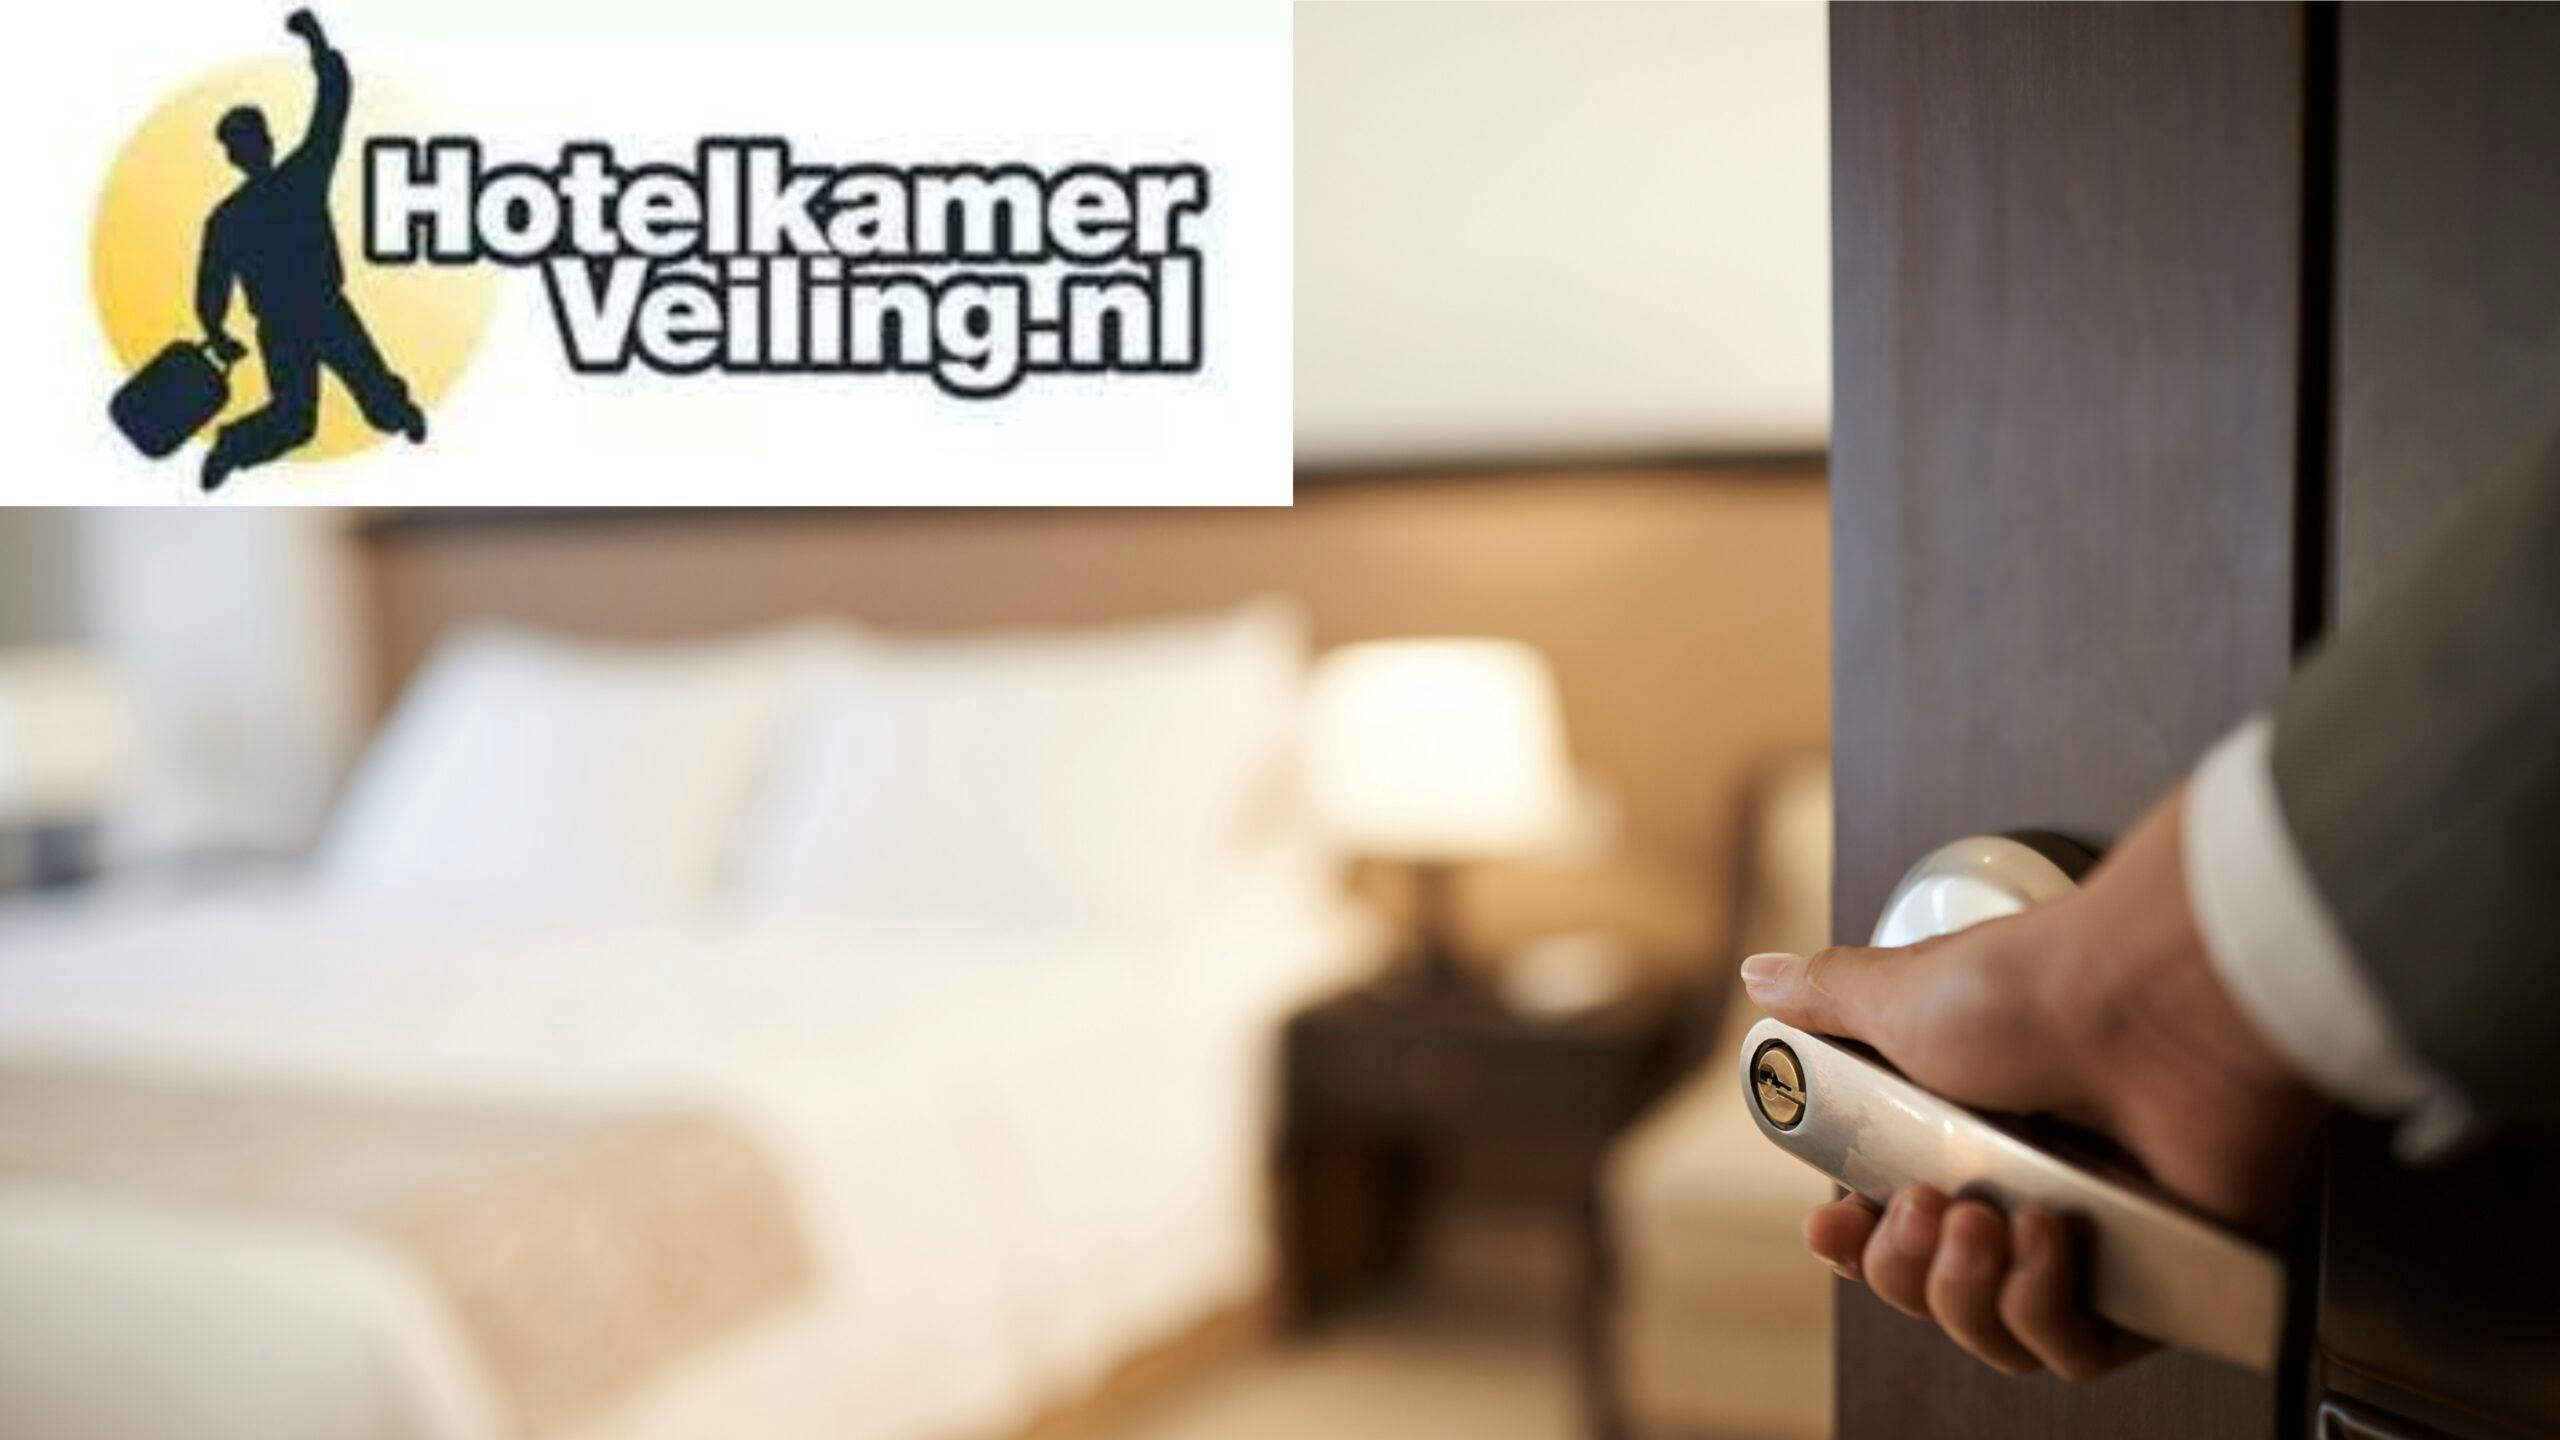 Doorstart failliet Hotelkamerveiling.nl laat op zich wachten